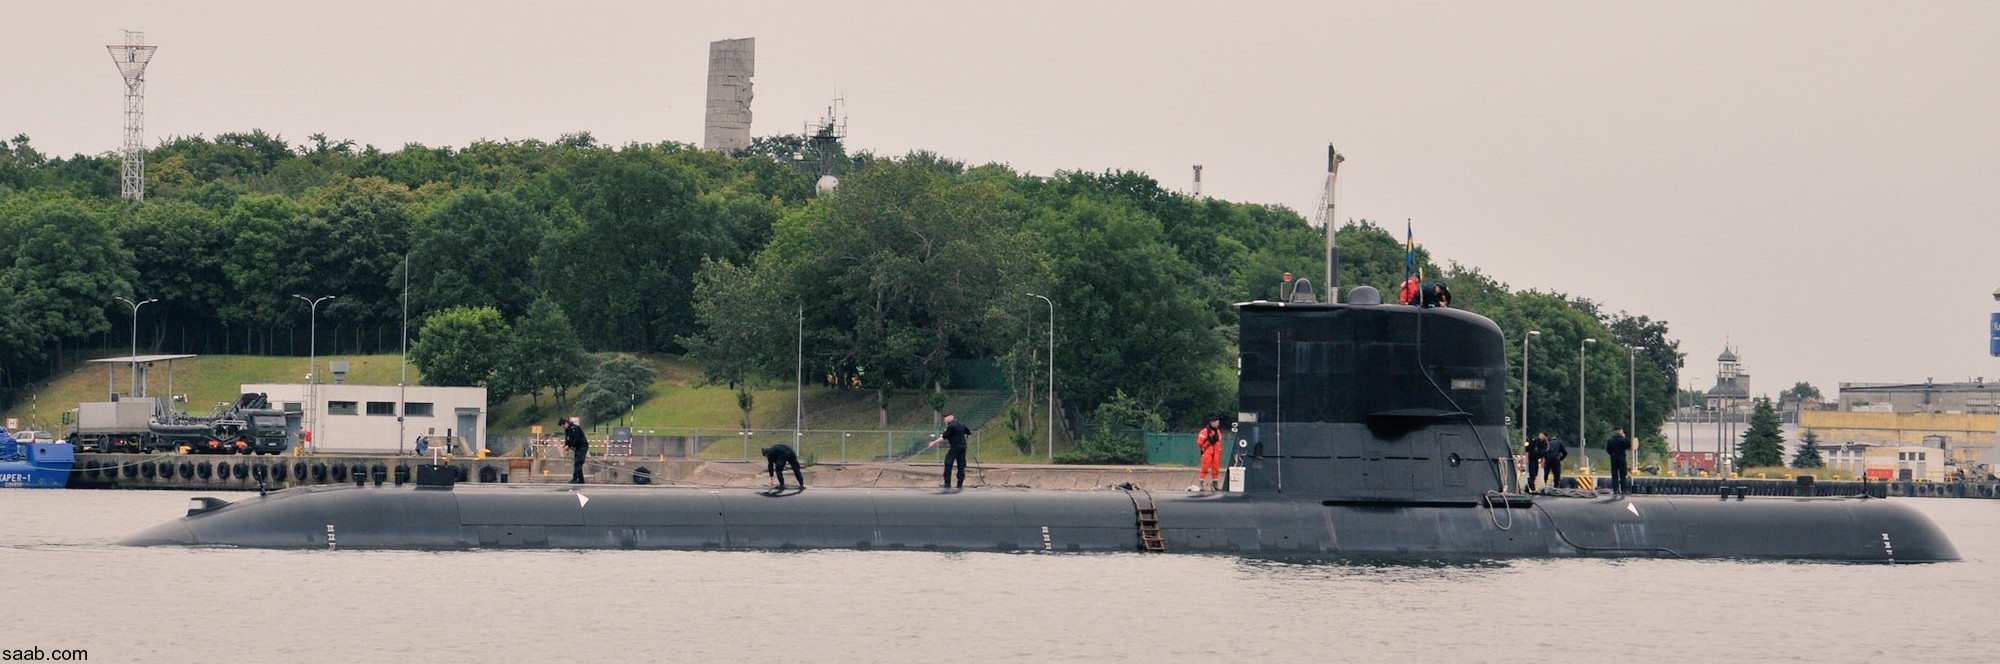 hswms hms sodermanland söd a17 vastergotland class submarine ssk swedish navy svenska marinen försvarsmakten kockums 10